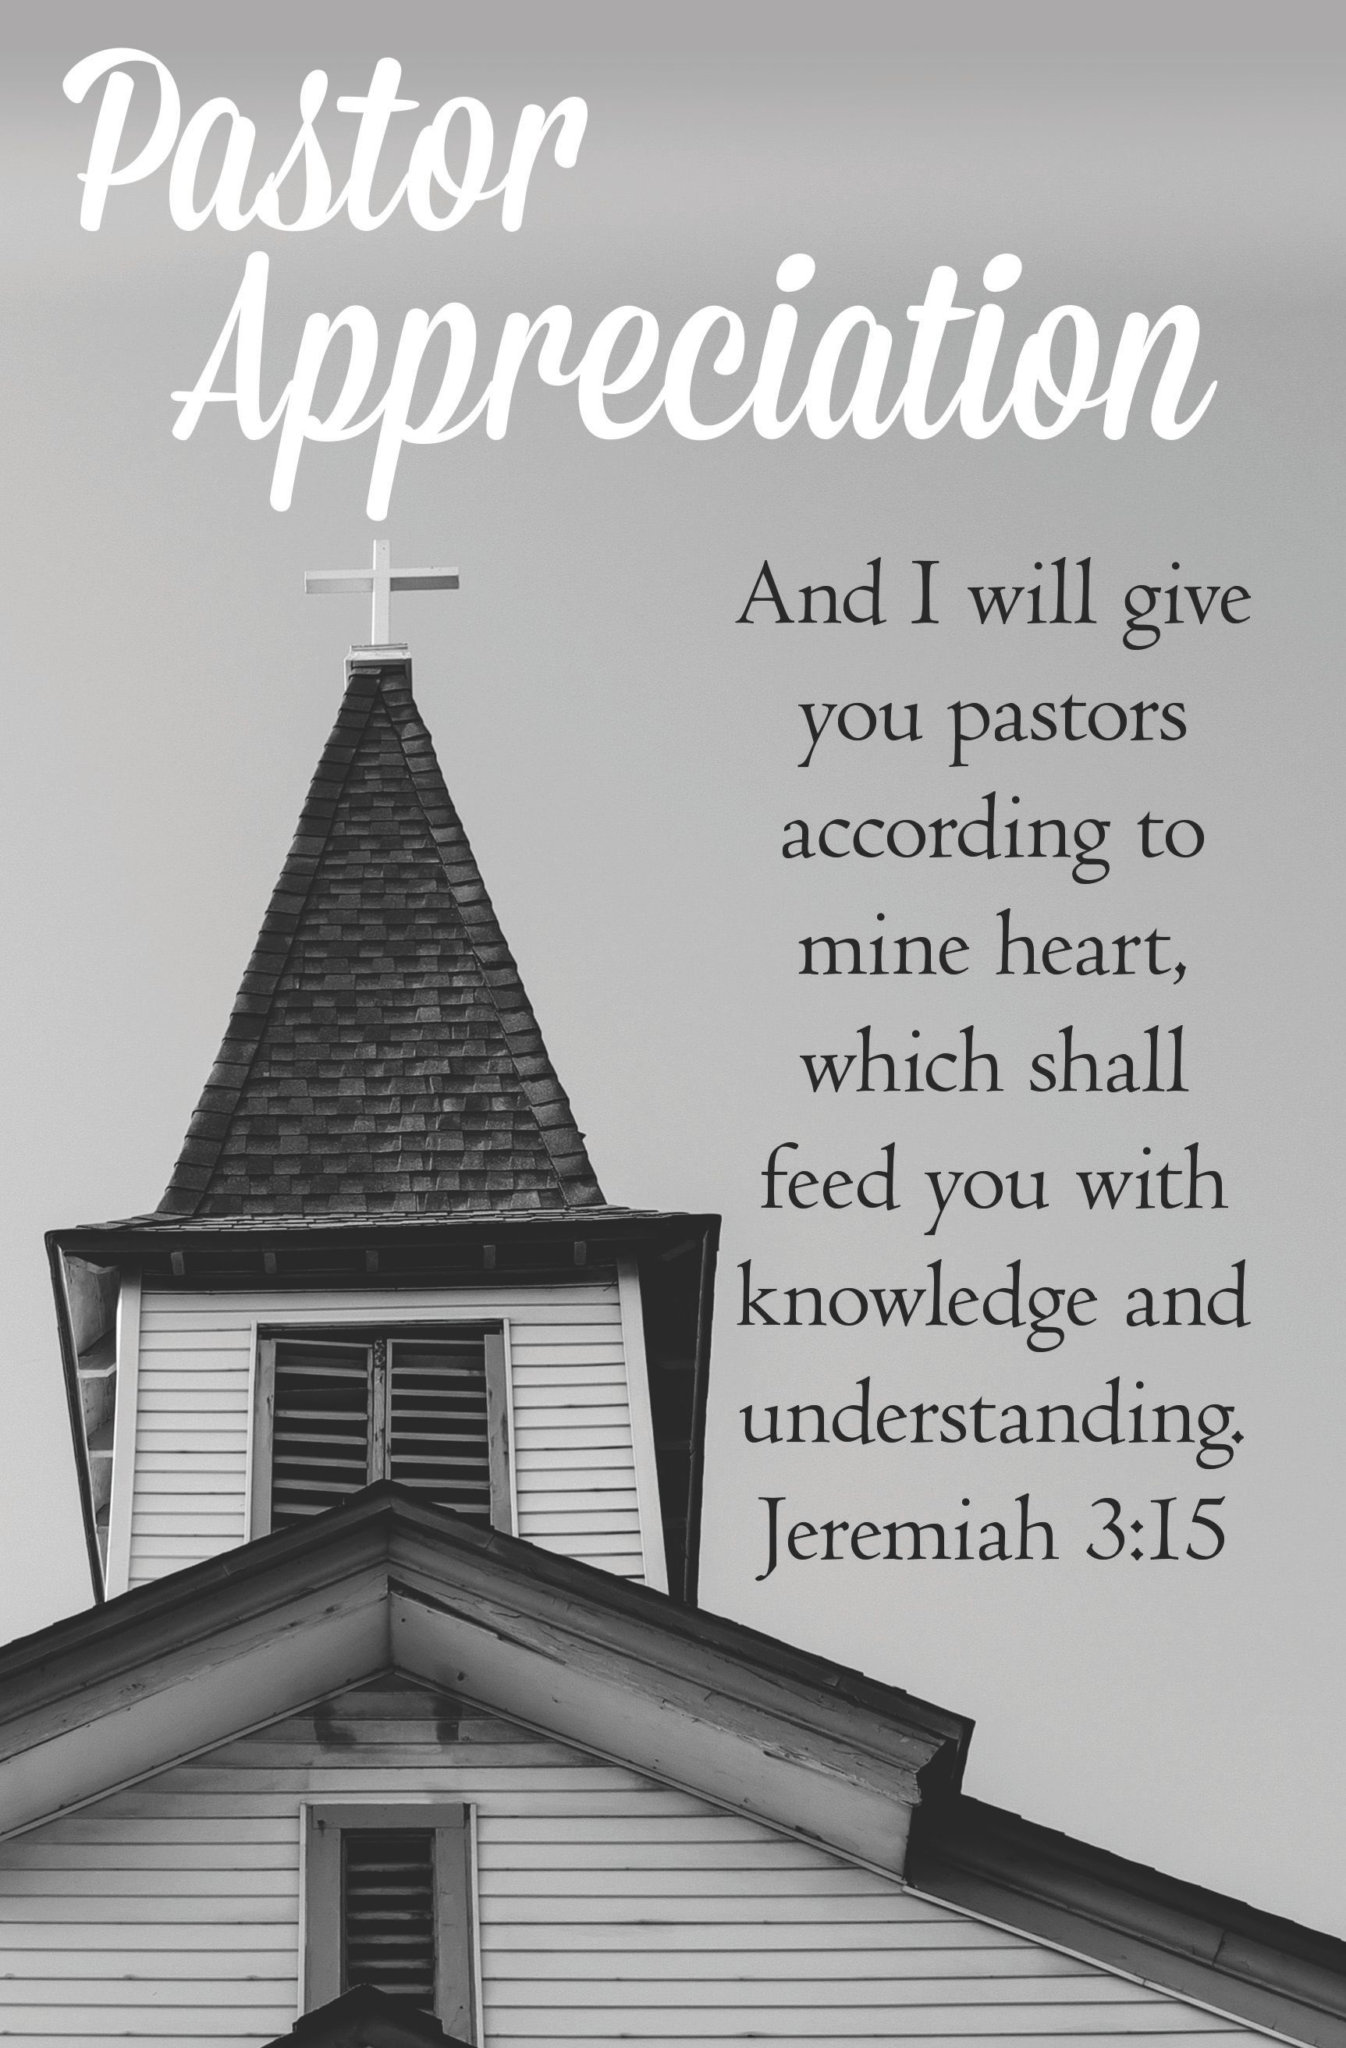 We Love Our Pastors Bulletin (Pkg 100) Pastor Appreciation B&H Publishing